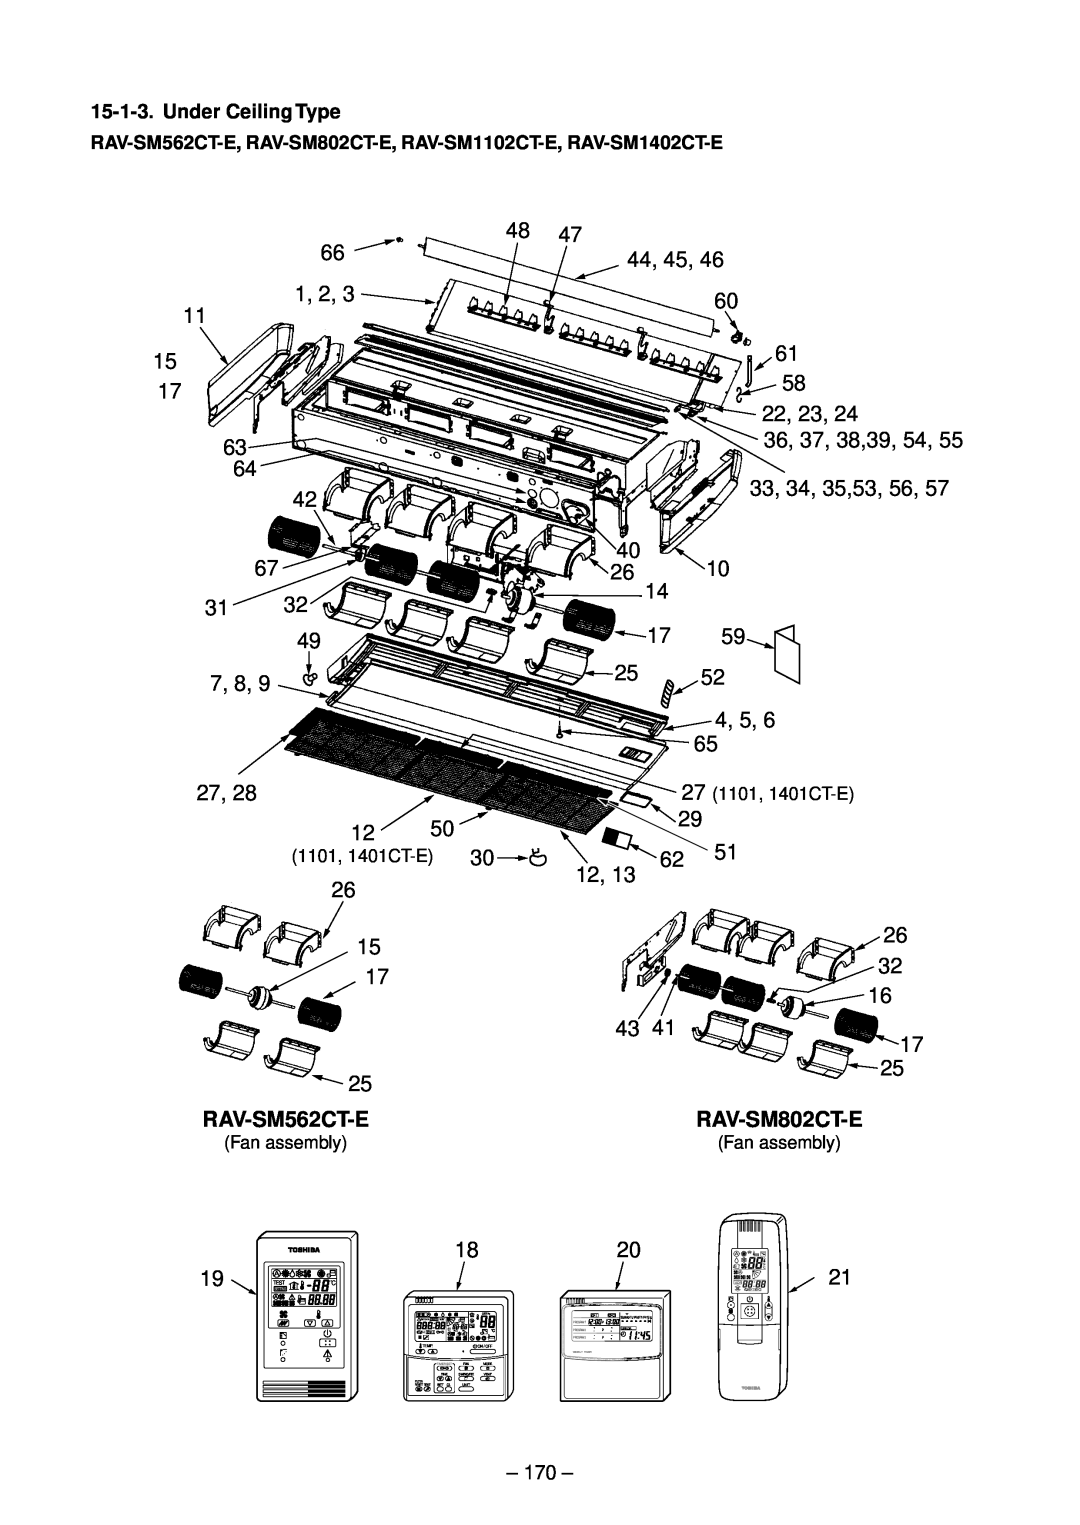 Toshiba RAV-SM1403UT-E 44, 45, 1, 2, 22, 23, 36, 37, 38,39, 54, 33, 34, 35,53, 56, 7, 8, 4, 5, Under Ceiling Type, Test 